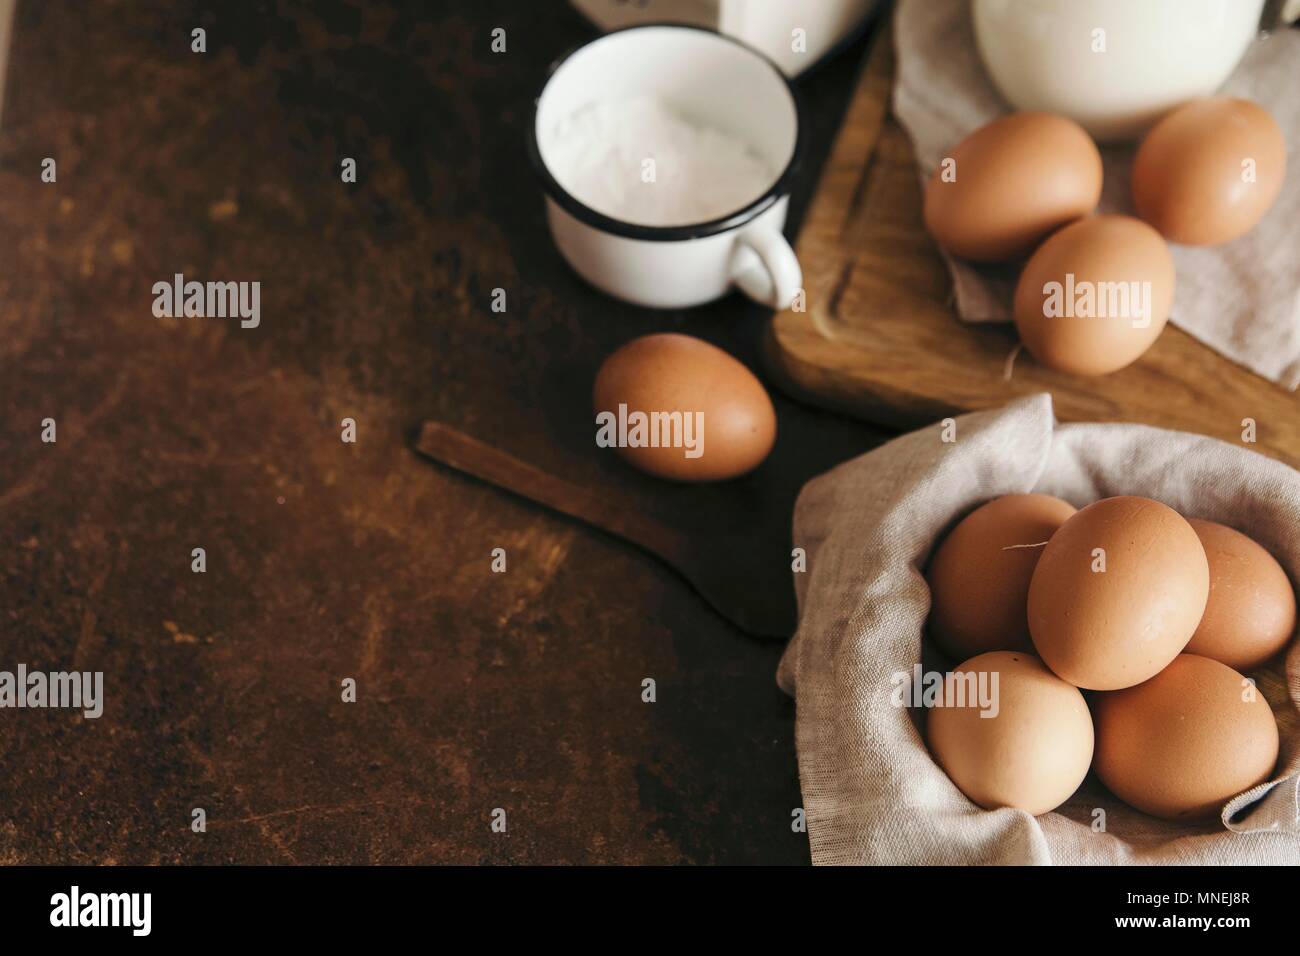 Fresco uova di pollo e una tazza di zucchero a velo Foto Stock